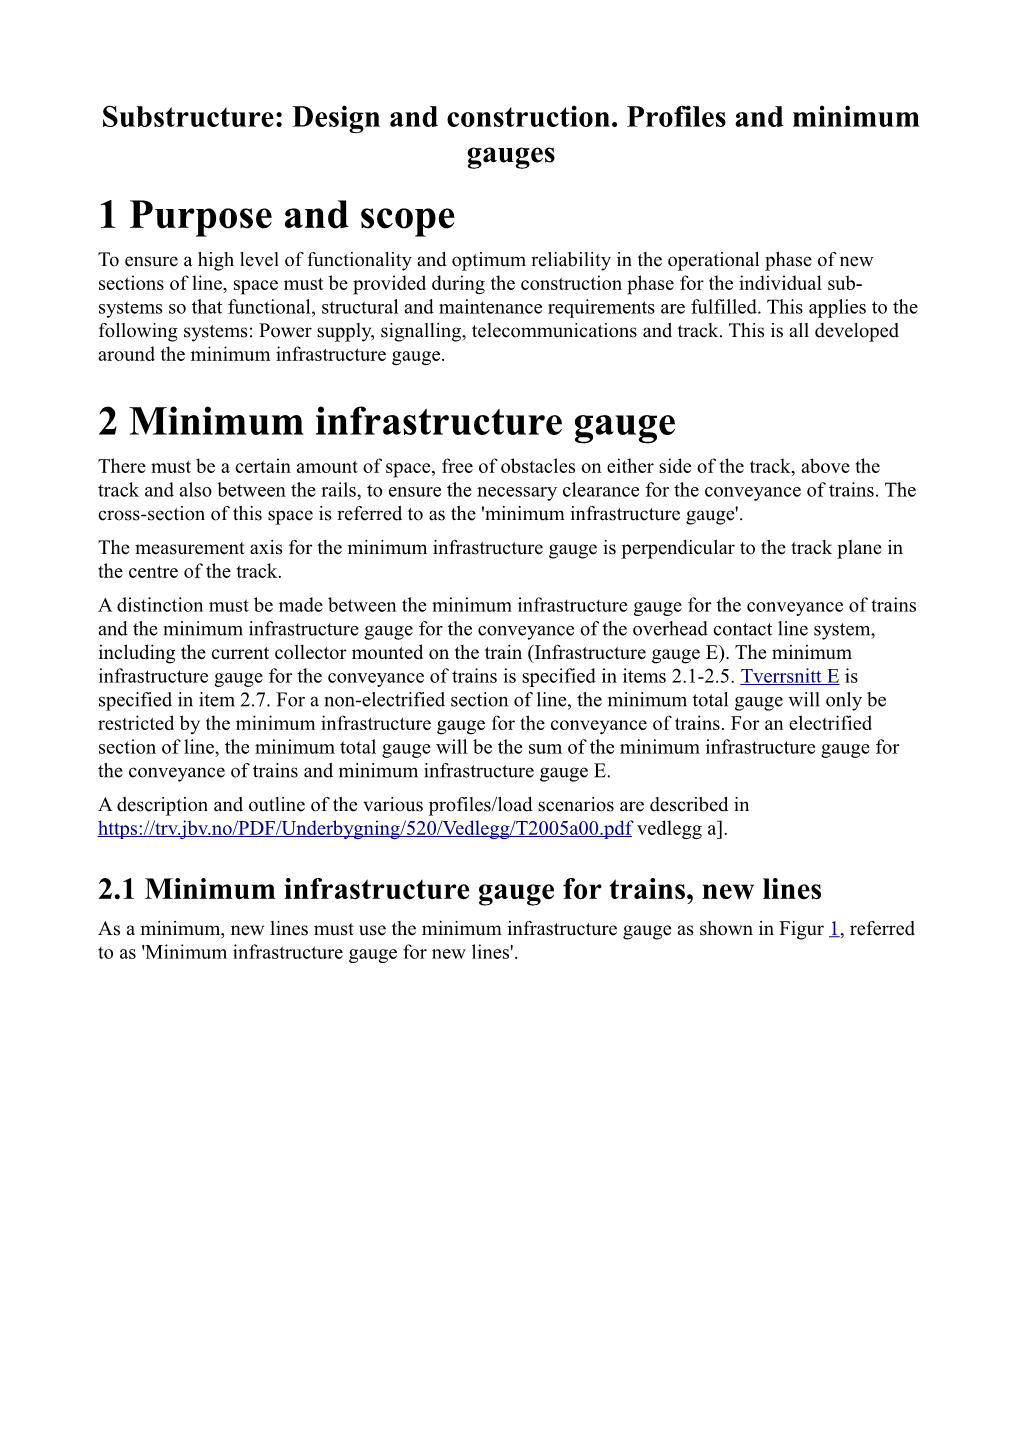 1 Purpose and Scope 2 Minimum Infrastructure Gauge